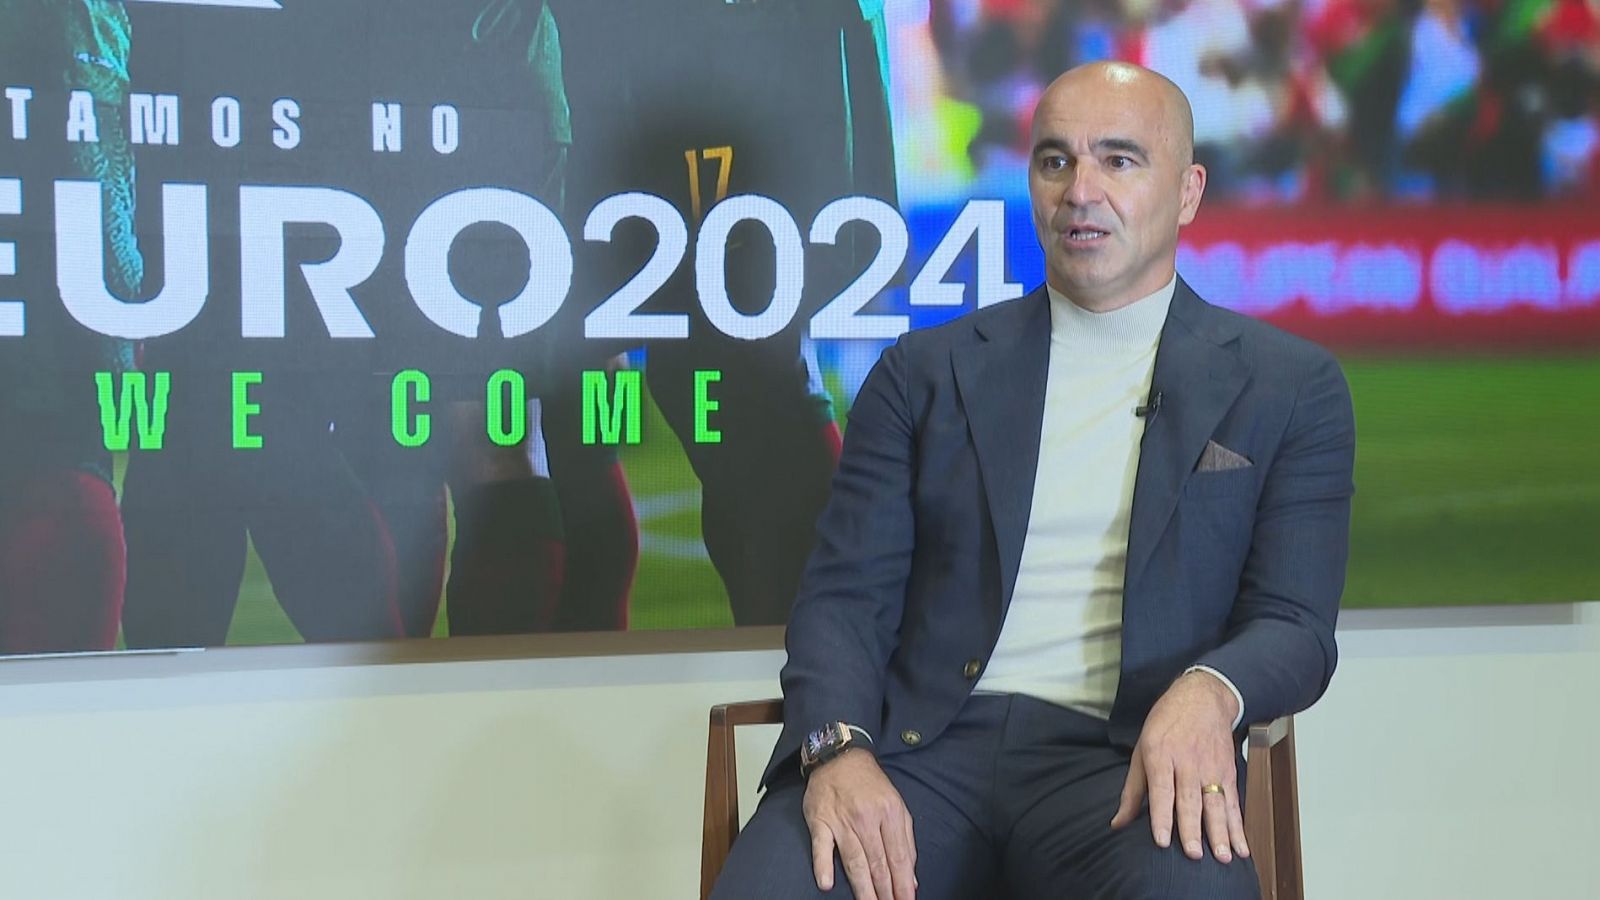 Roberto Martínez incluye a España entre las candidatas a ganar la Euro 2024: "Ganar la Nations League le ha dado un poso importante."